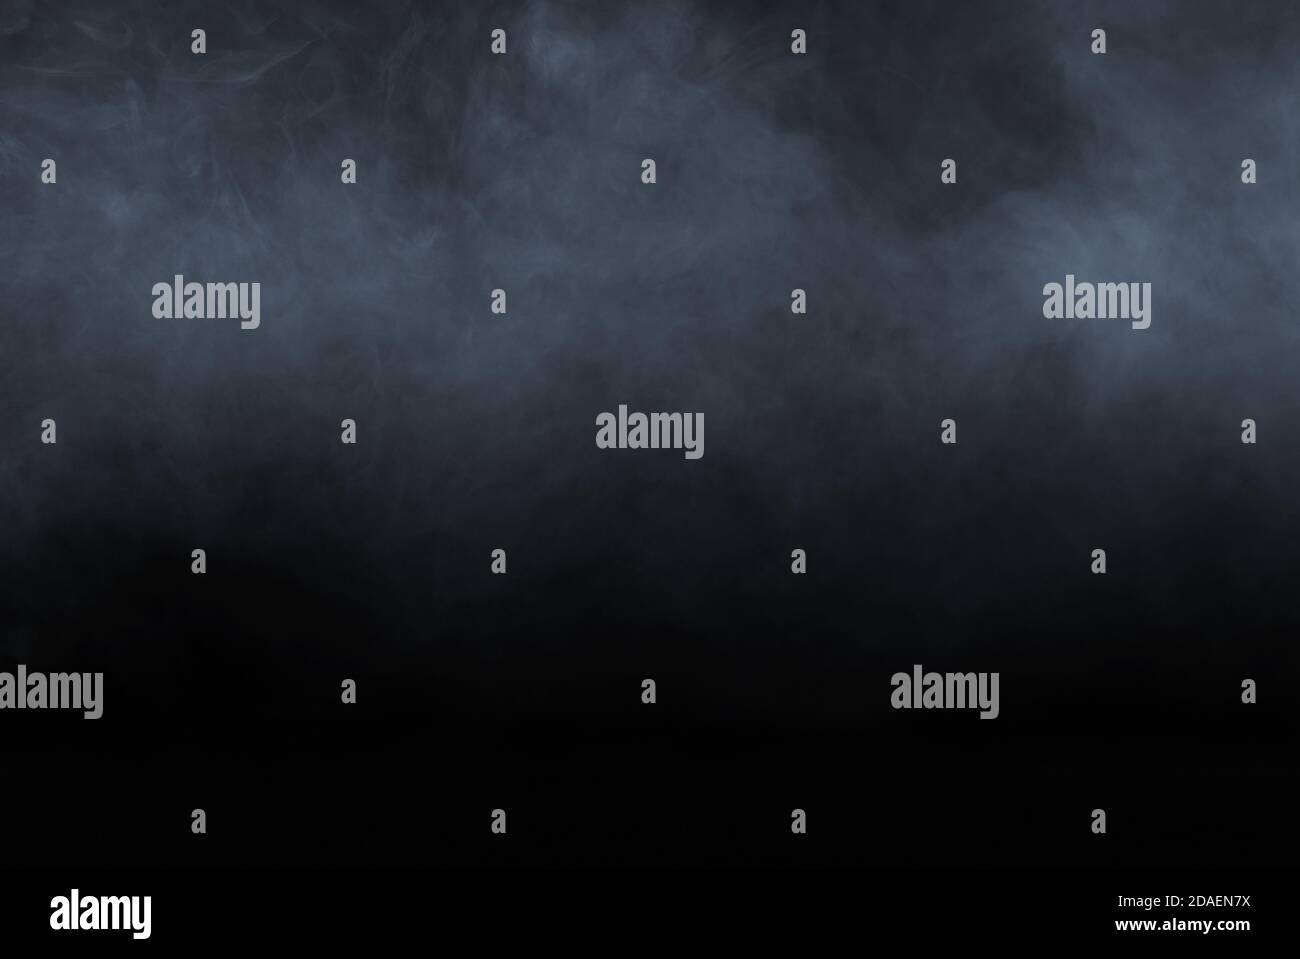 Smoke or fog isolated on white background Stock Photo